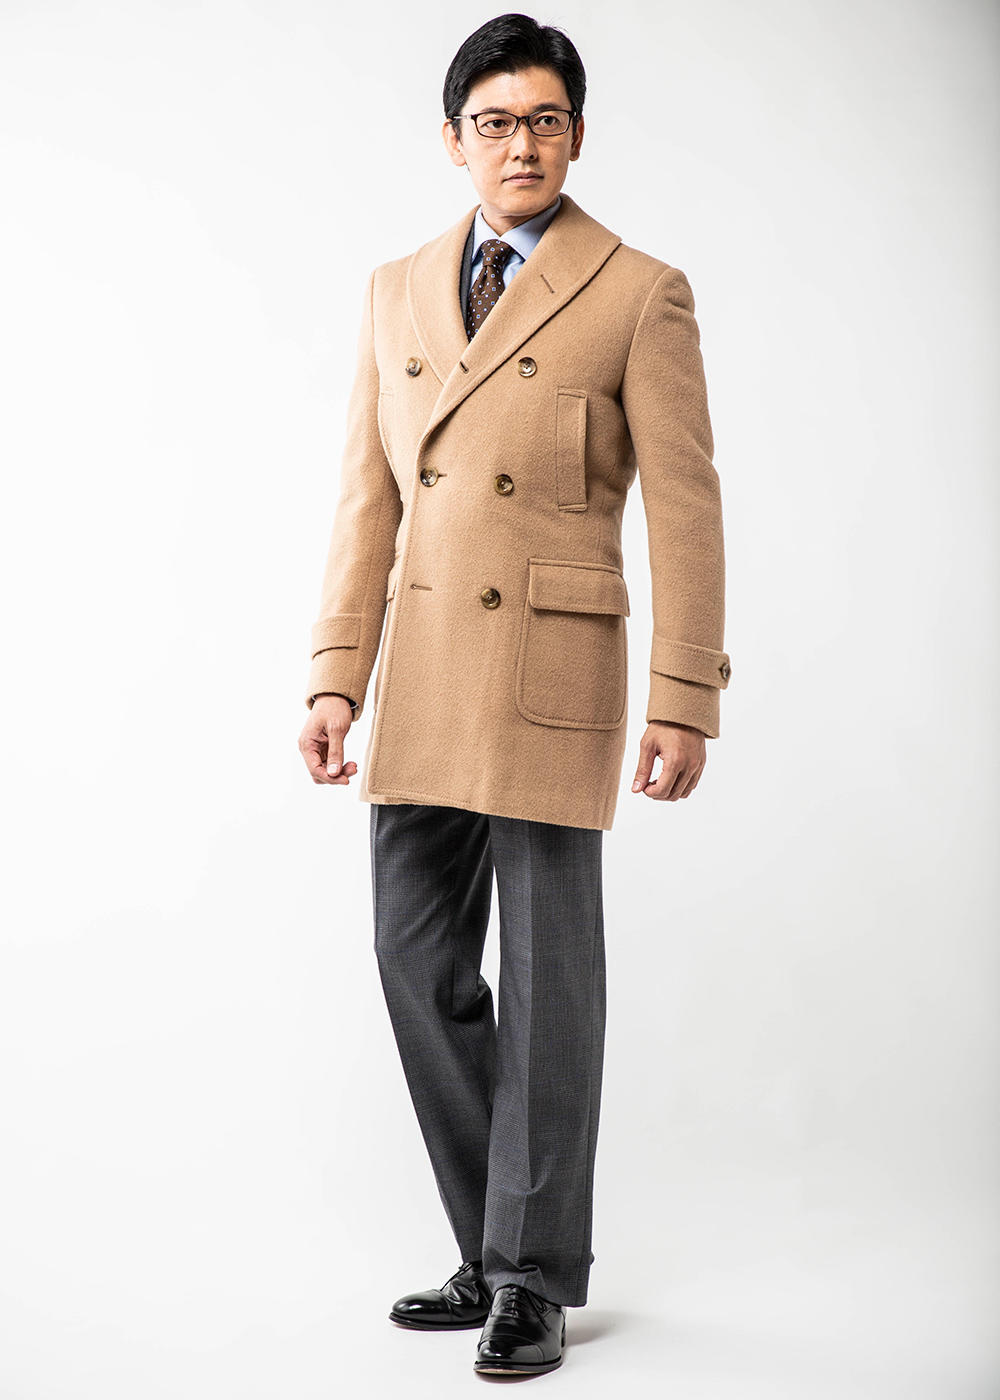 背が低い人のための技ありコート選びの鉄則～大人のための賢いコート選び【4】 | PRESIDENT STYLE